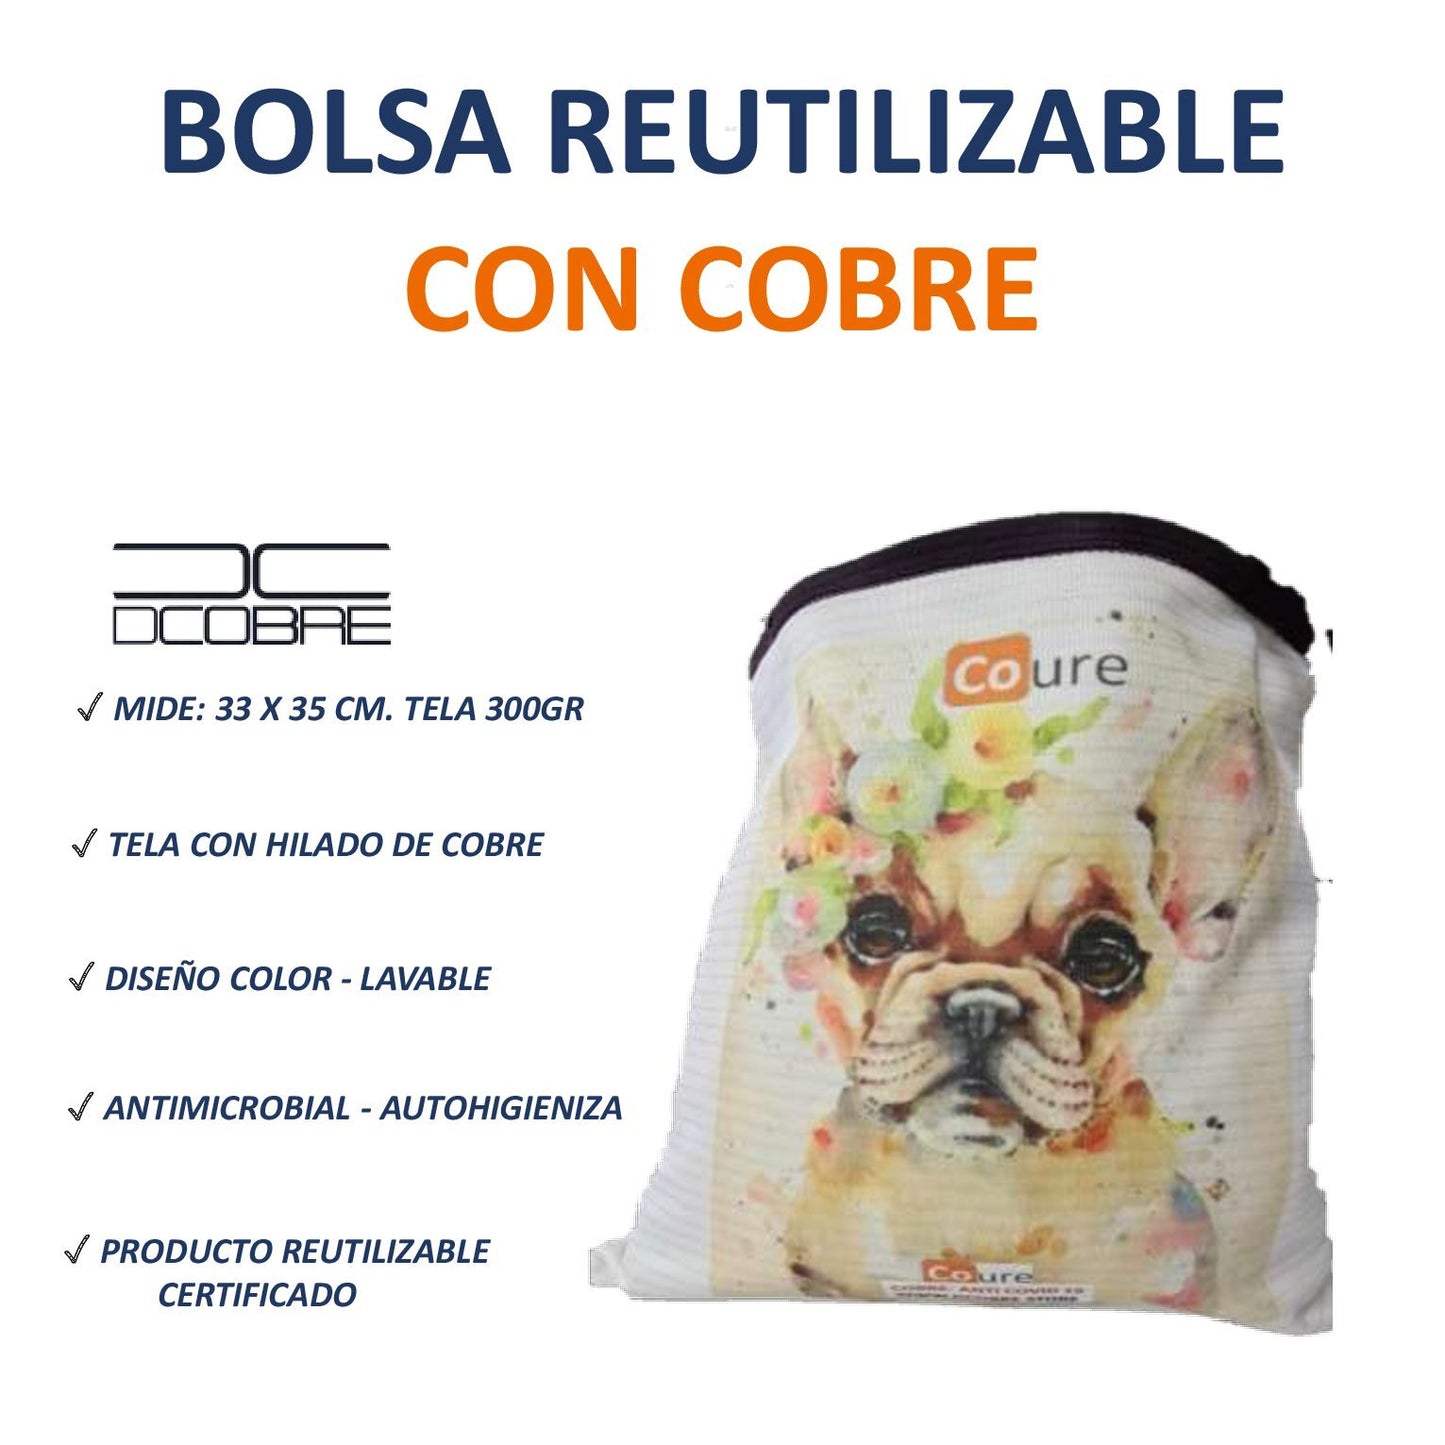 Bolsa Reutilizable PERRO BULLDOG (tela 300 grs.)